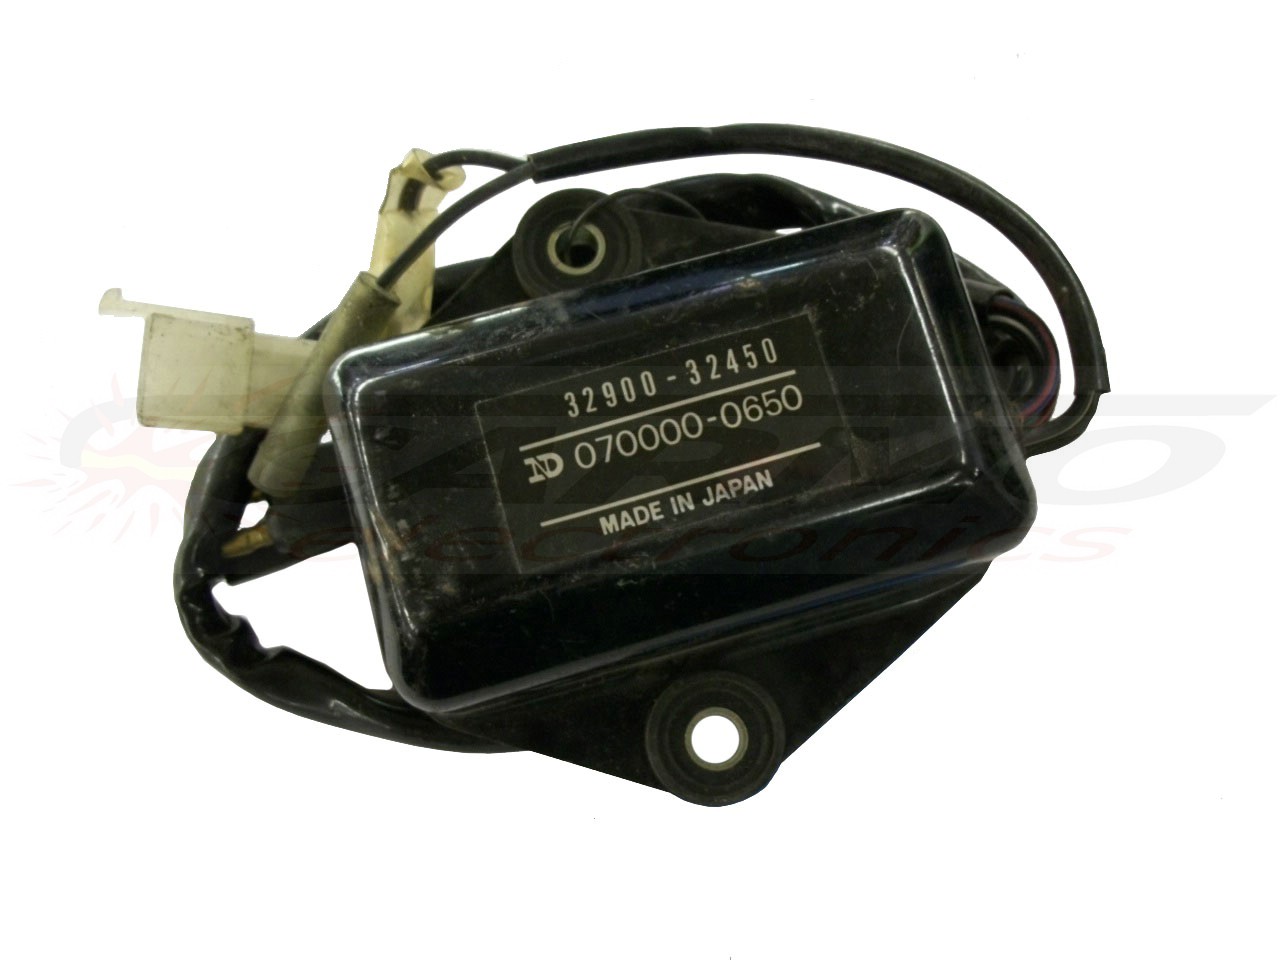 DR400 GN400 SP400 CDI dispositif de commande boîte noire (32900-32450, 070000-0650)